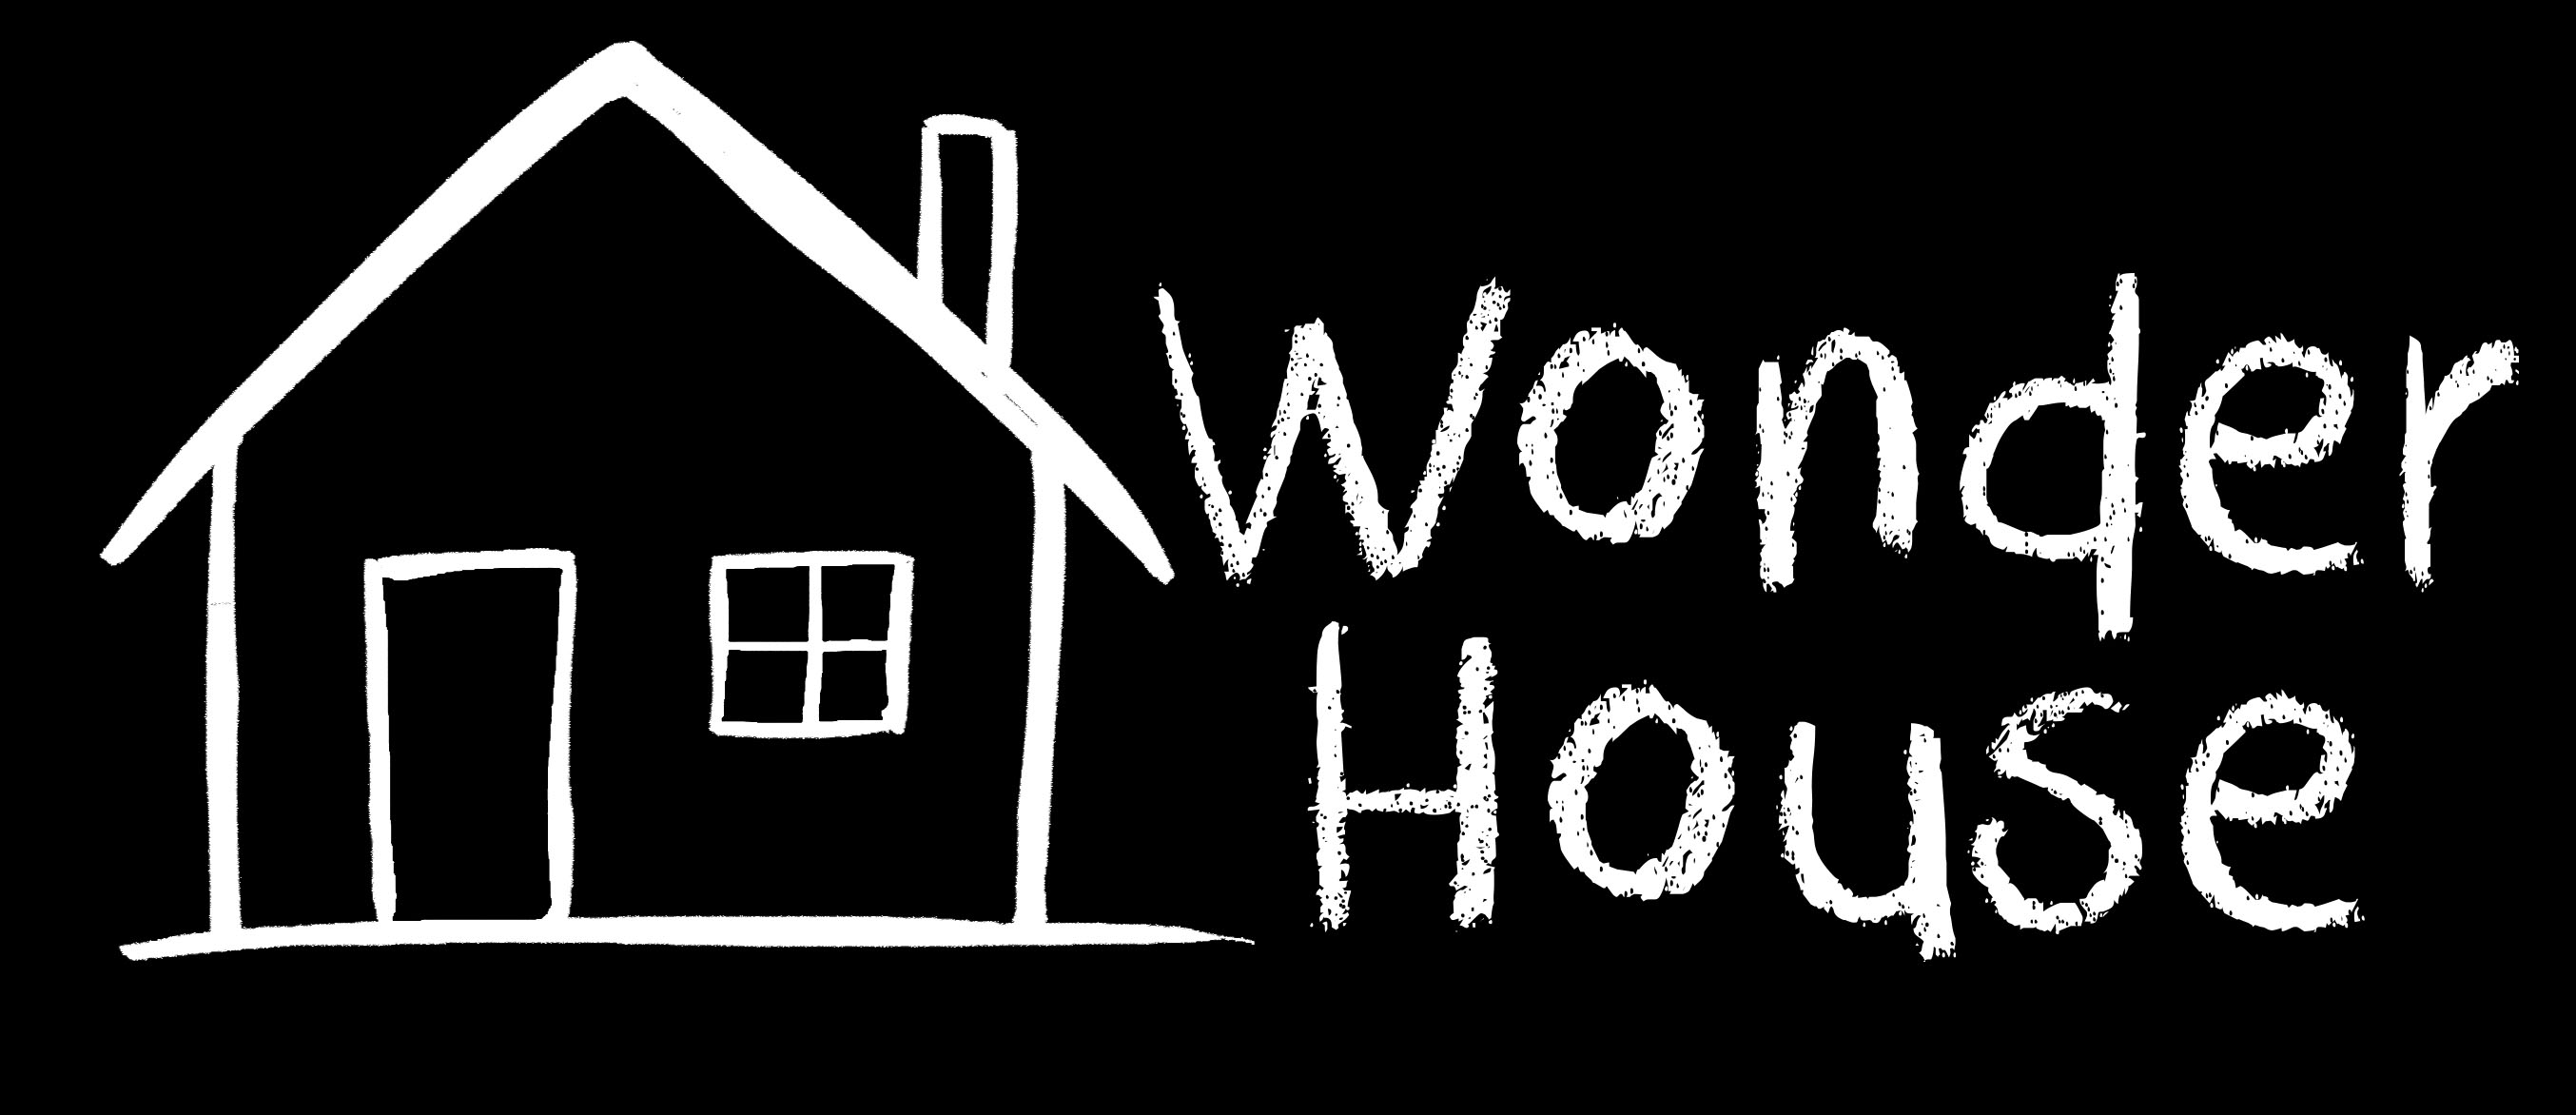 Wonder House